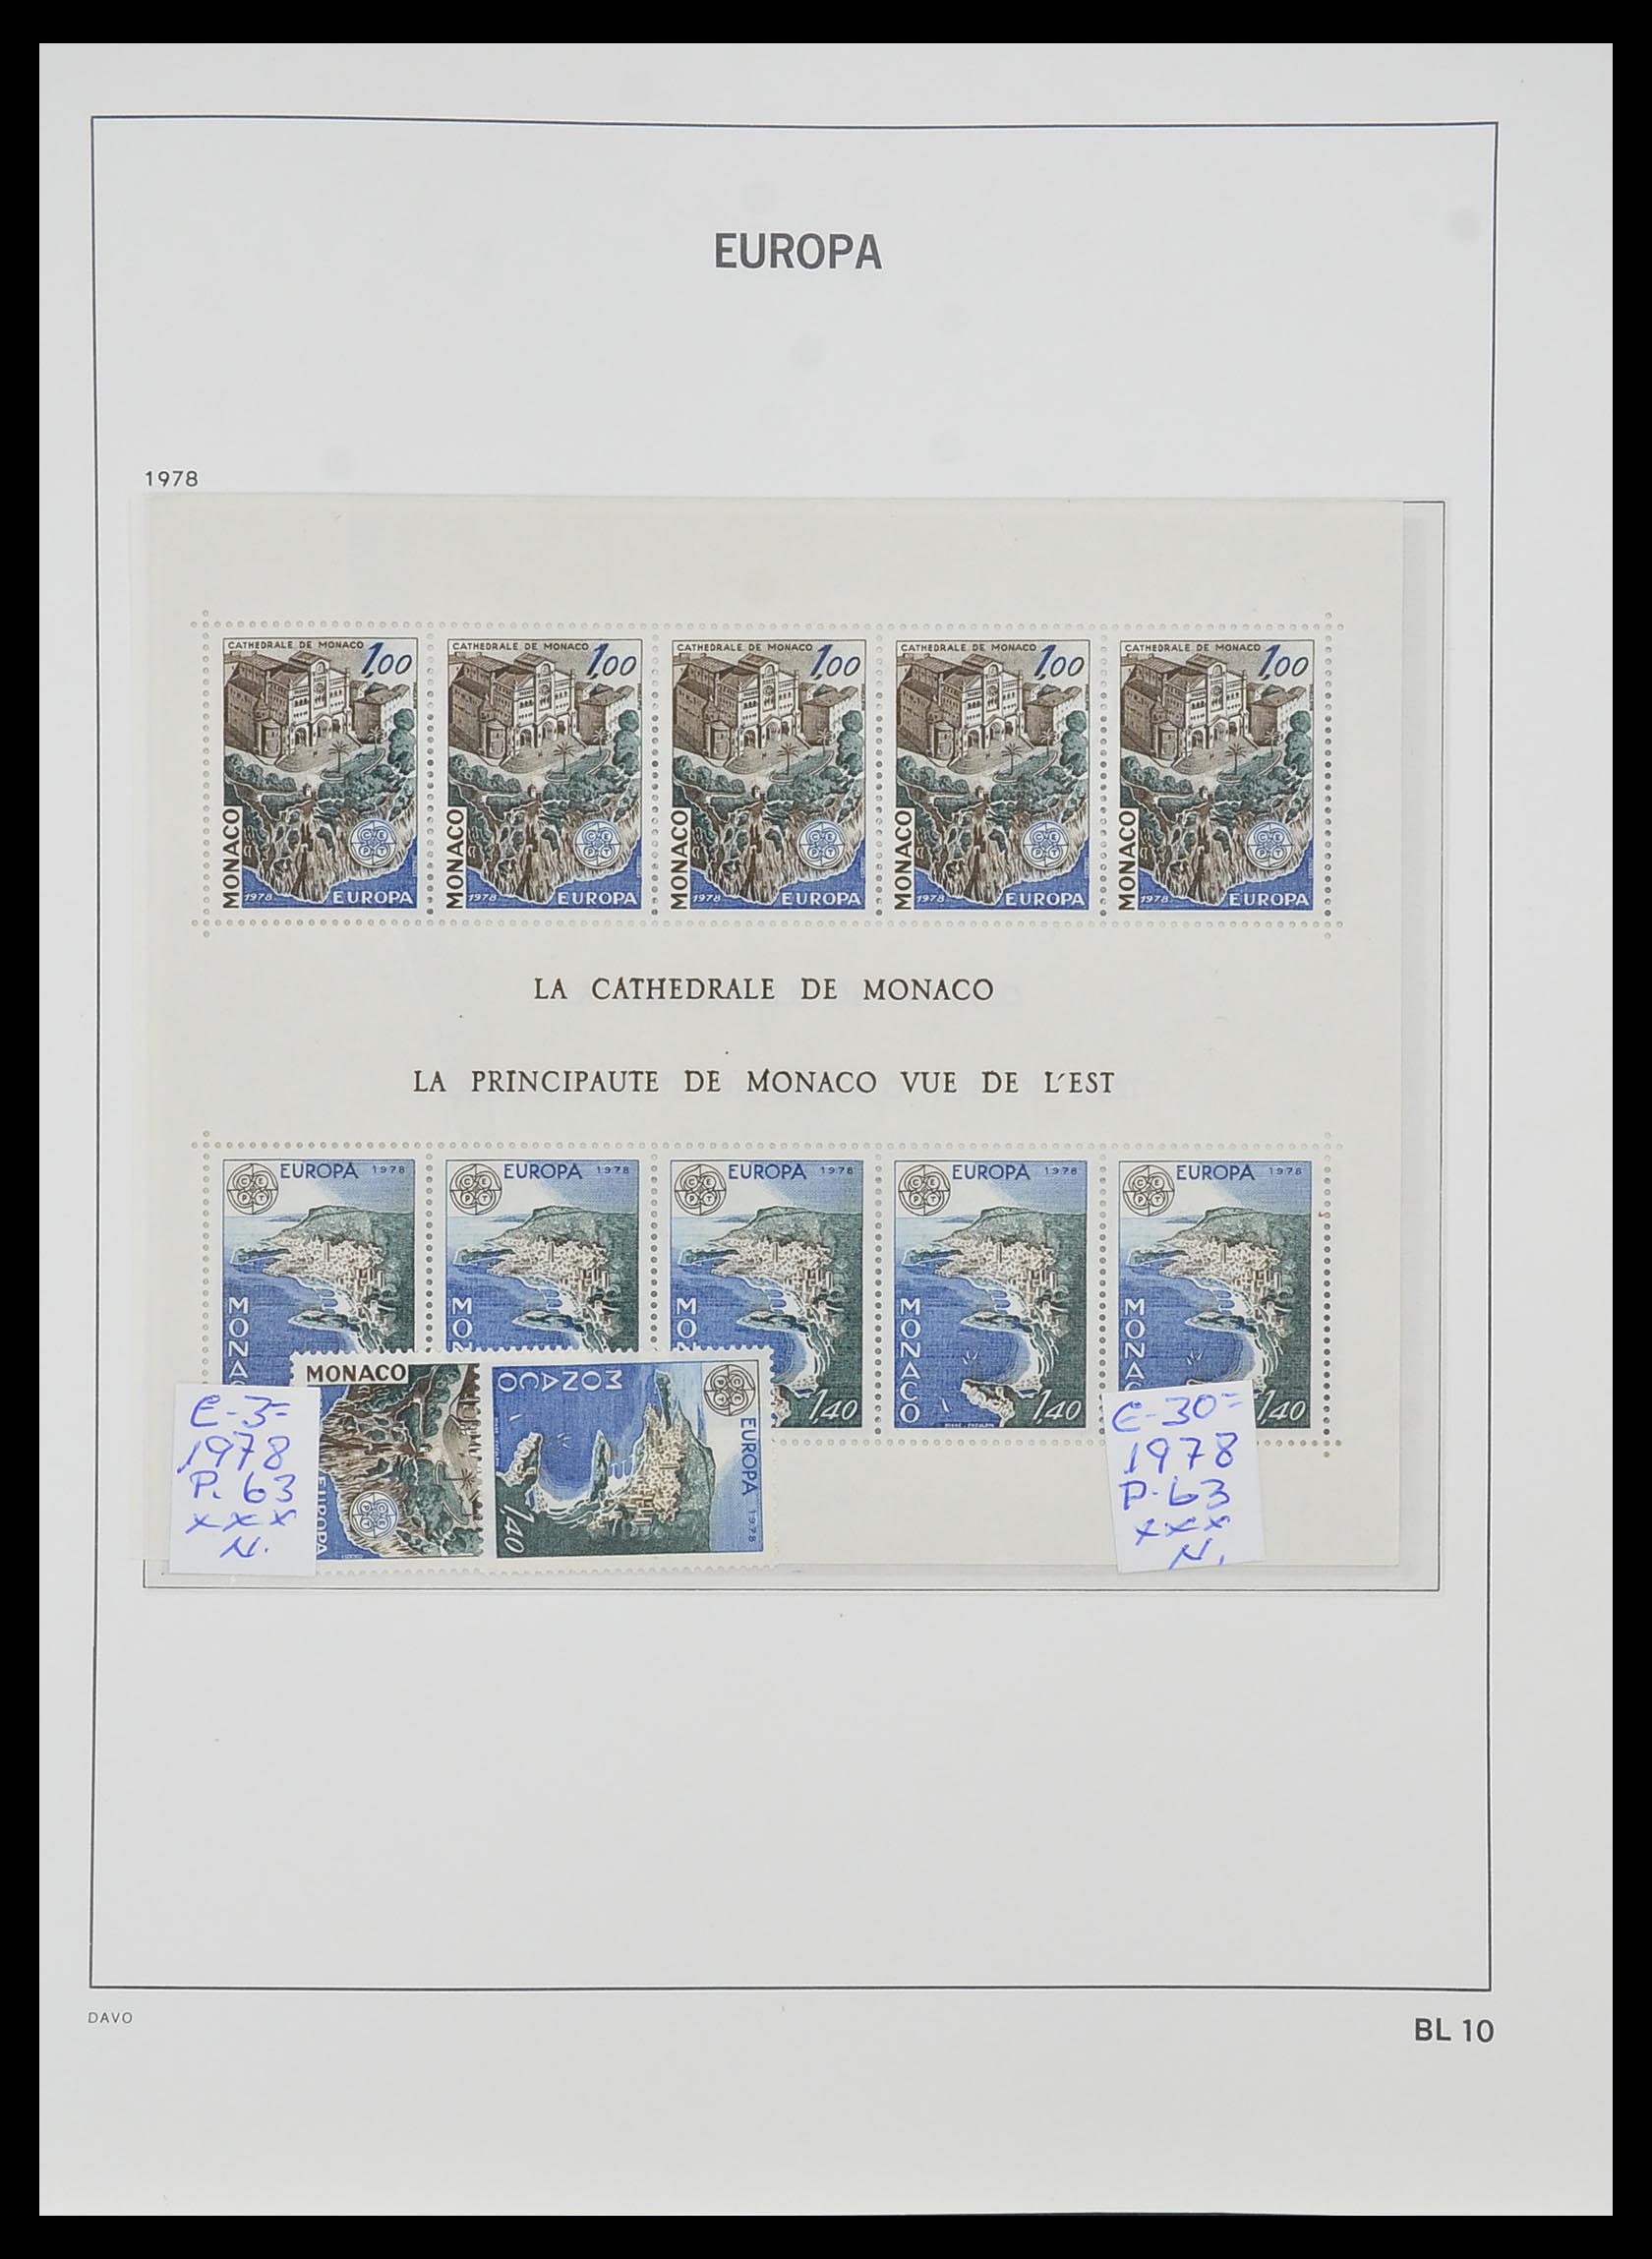 33985 010 - Stamp collection 33985 Europa CEPT souvenir sheets 1974-2014.